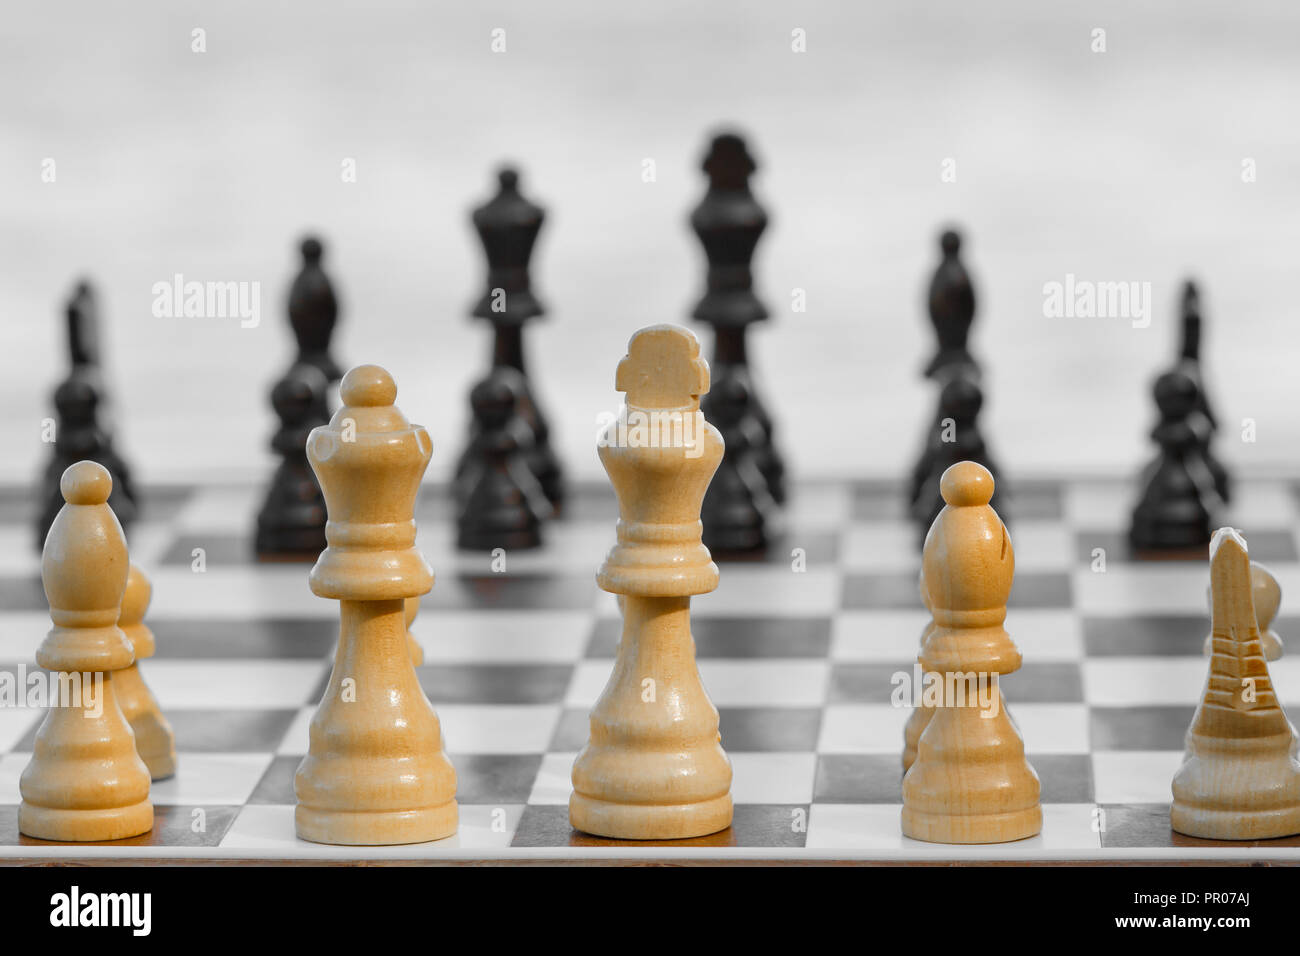 Pièces des échecs en bois Close up à bord sur fond lumineux. Selective focus sur les pièces blanches. Jeu d'échecs en plein air Banque D'Images